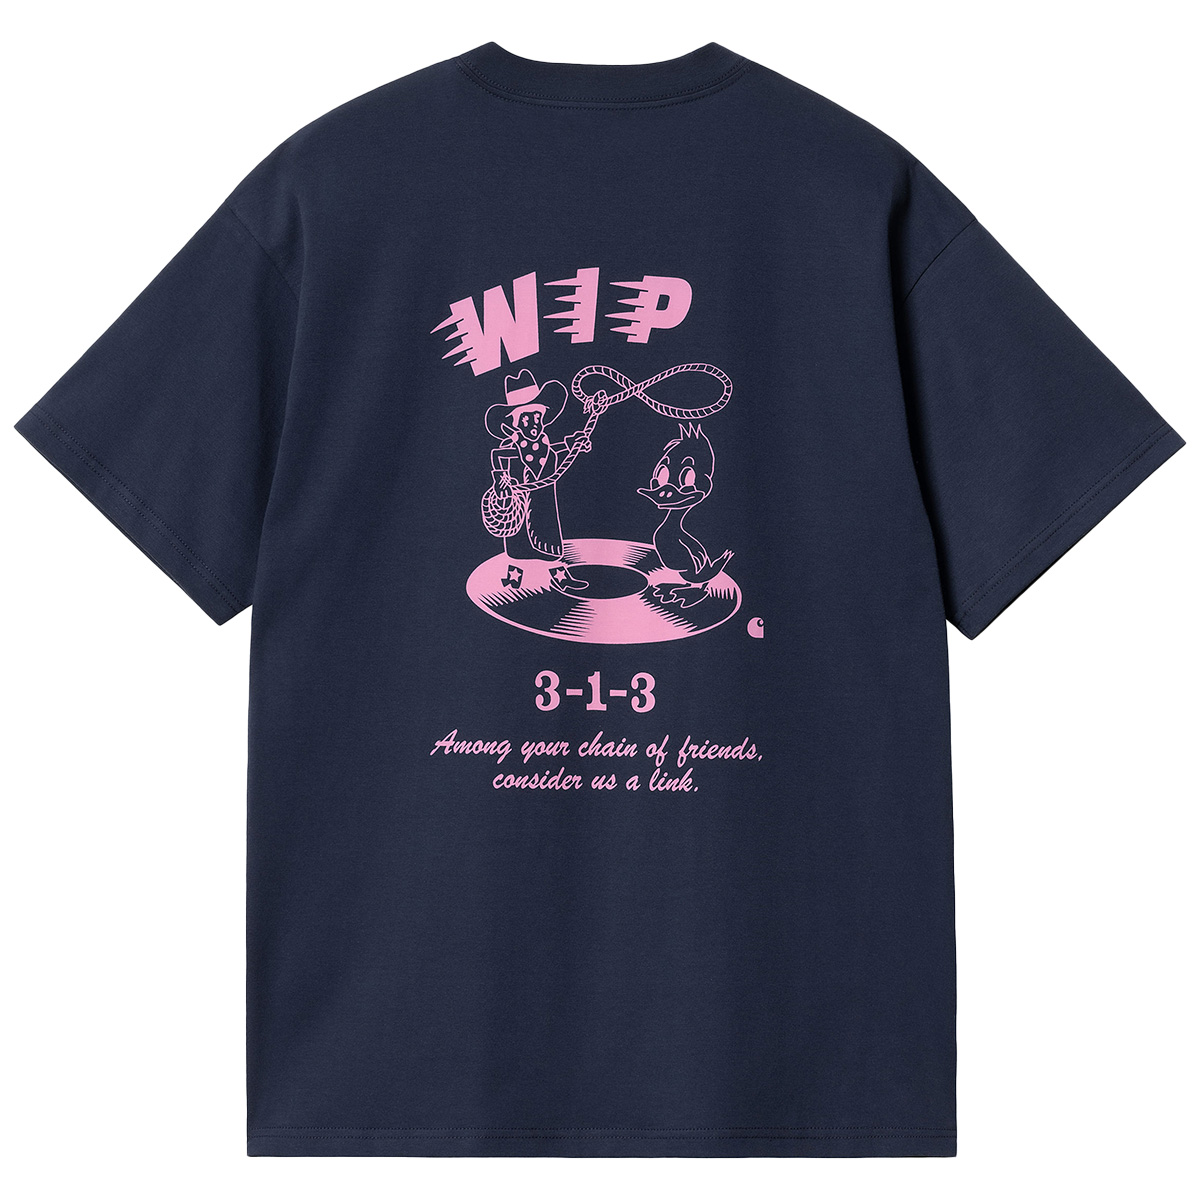 Carhartt WIP Friendship T-Shirt Air Force Blue/Light Pink